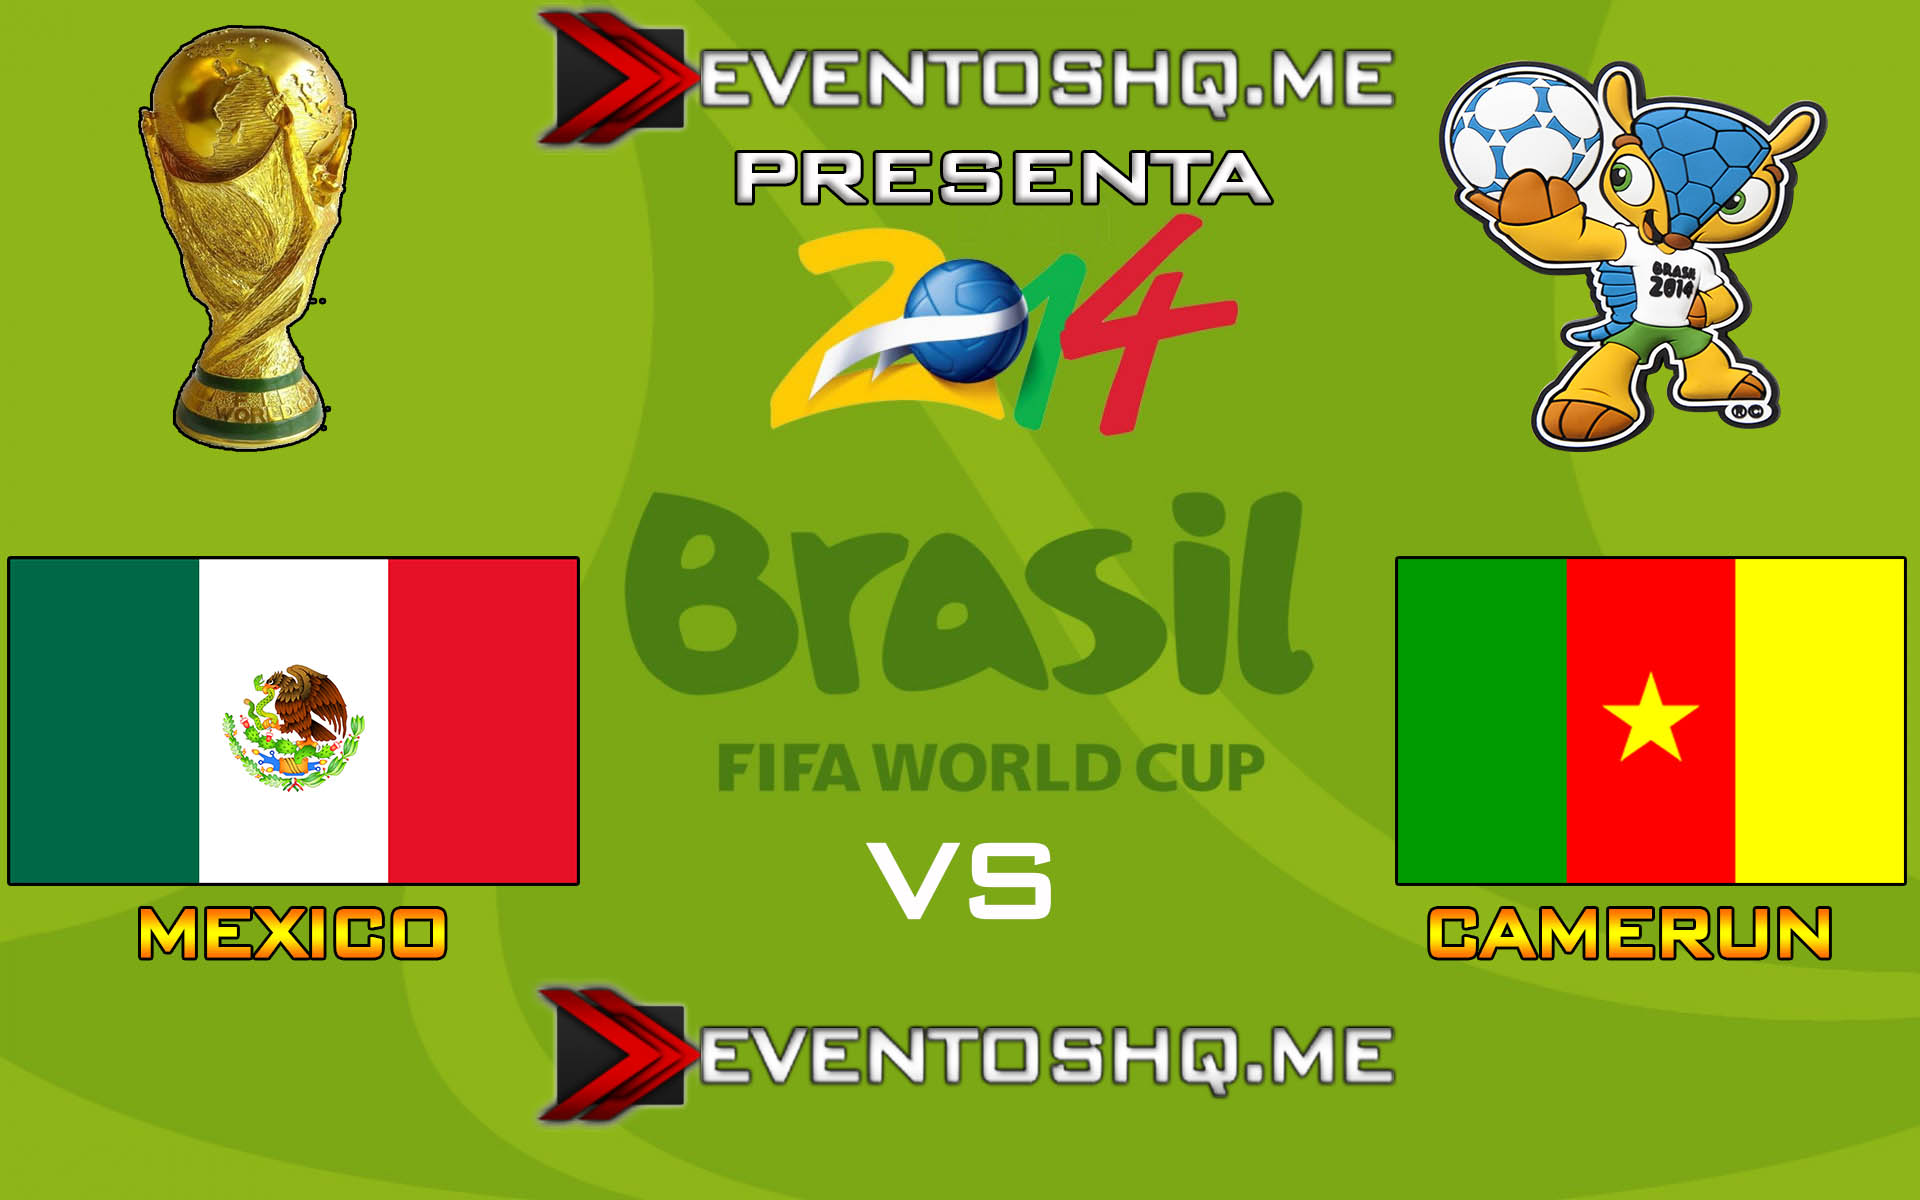 Ver en Vivo Mexico vs Camerun Mundial Brasil 2014 www.eventoshq.me